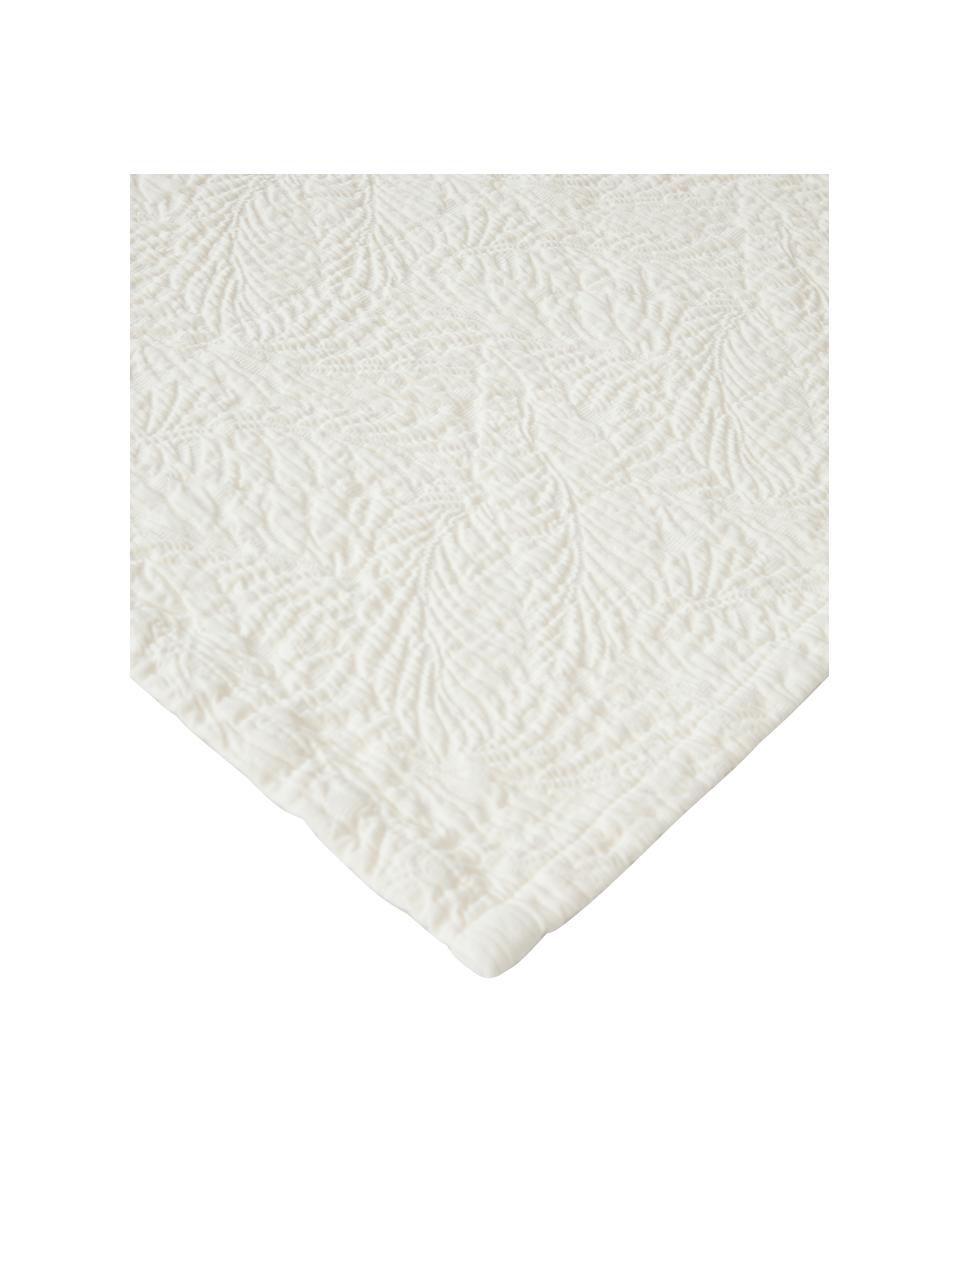 Texturovaný bavlněný přehoz Panra, 100 % bavlna

Materiál použitý v tomto produktu byl testován na škodlivé látky a certifikován podle OEKO-TEX Standard 100 - Textile by OEKO-TEX®, CITEVE, 5763CIT., Krémově bílá, Š 230 cm, D 250 cm